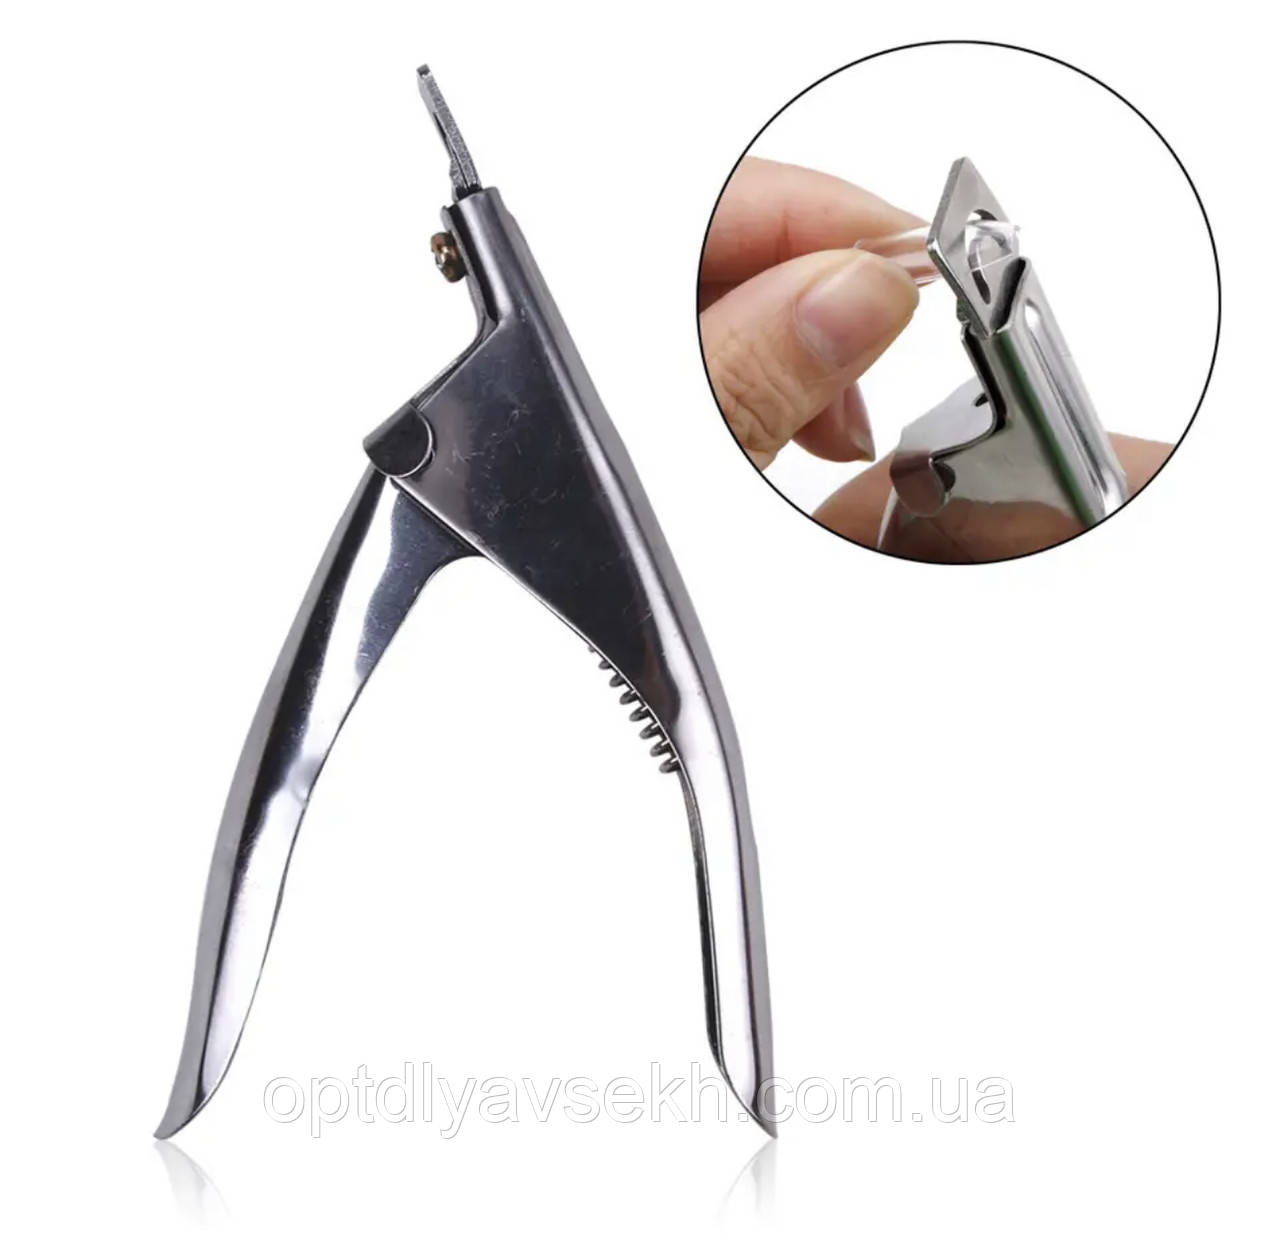 Металевий типсоріз (каттер, кусачки) для обрізання штучних нігтів, тіпс та верхніх форм. Срібло